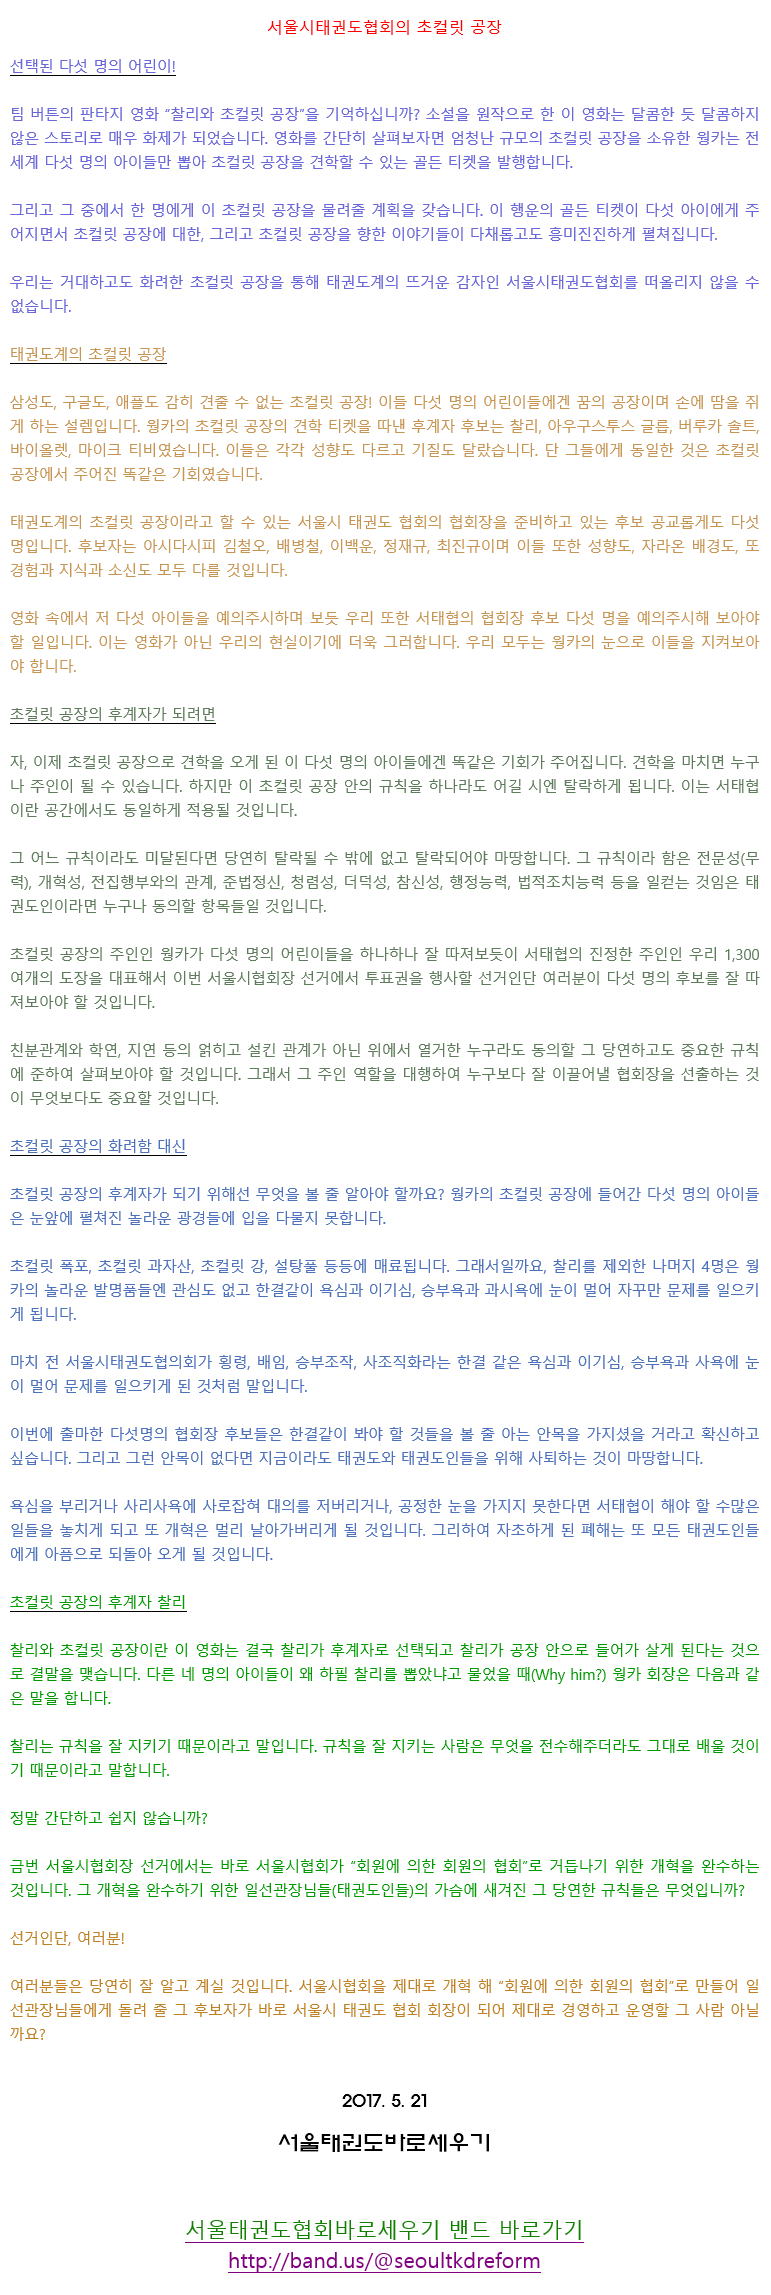 20170521_서울시태권도협회의초컬릿공장.gif